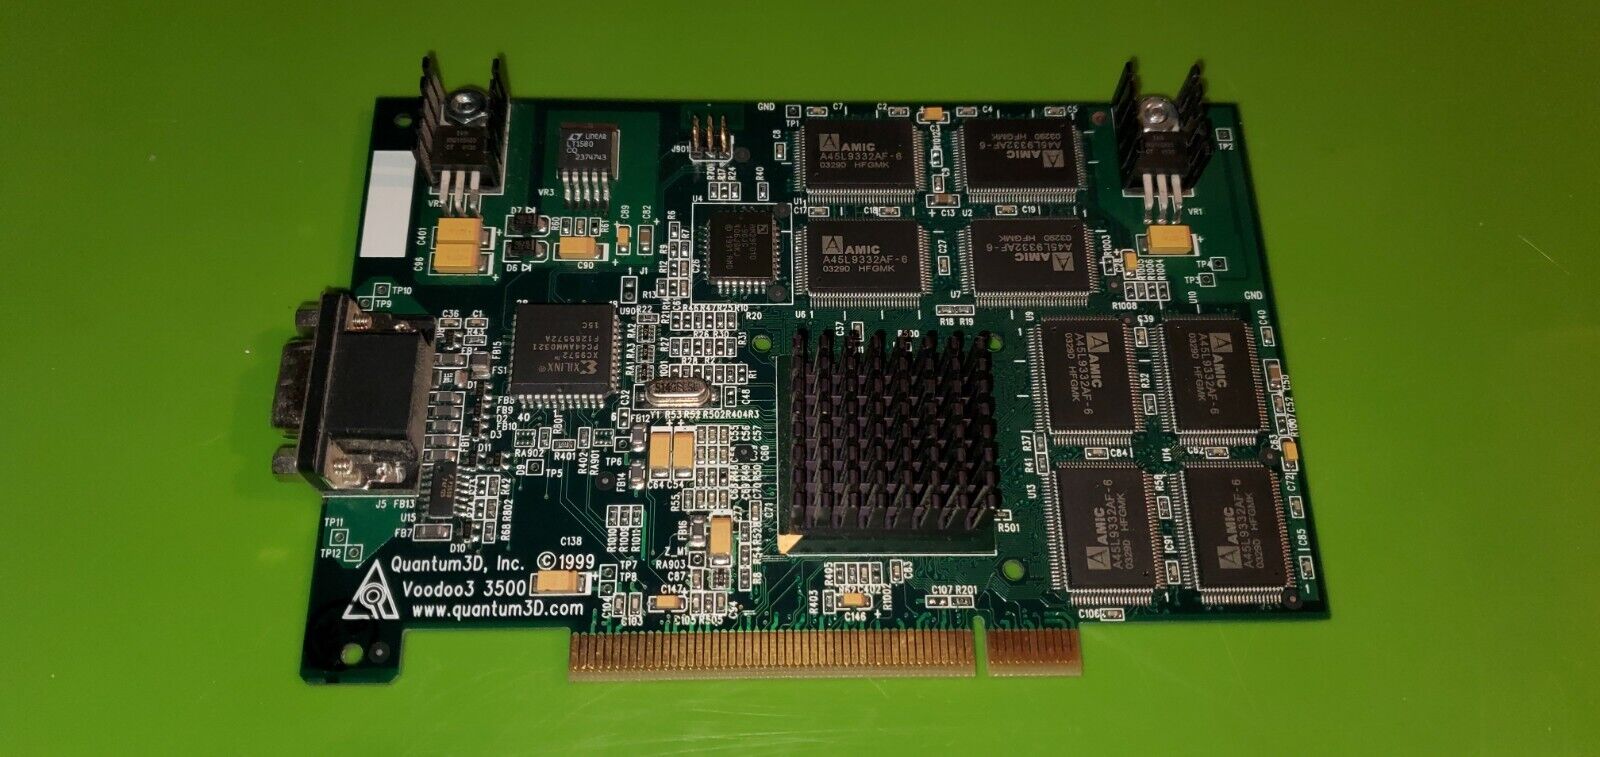 *RARE* PCI Quantum3d Ventana Voodoo 3 3500 VGA Video Card